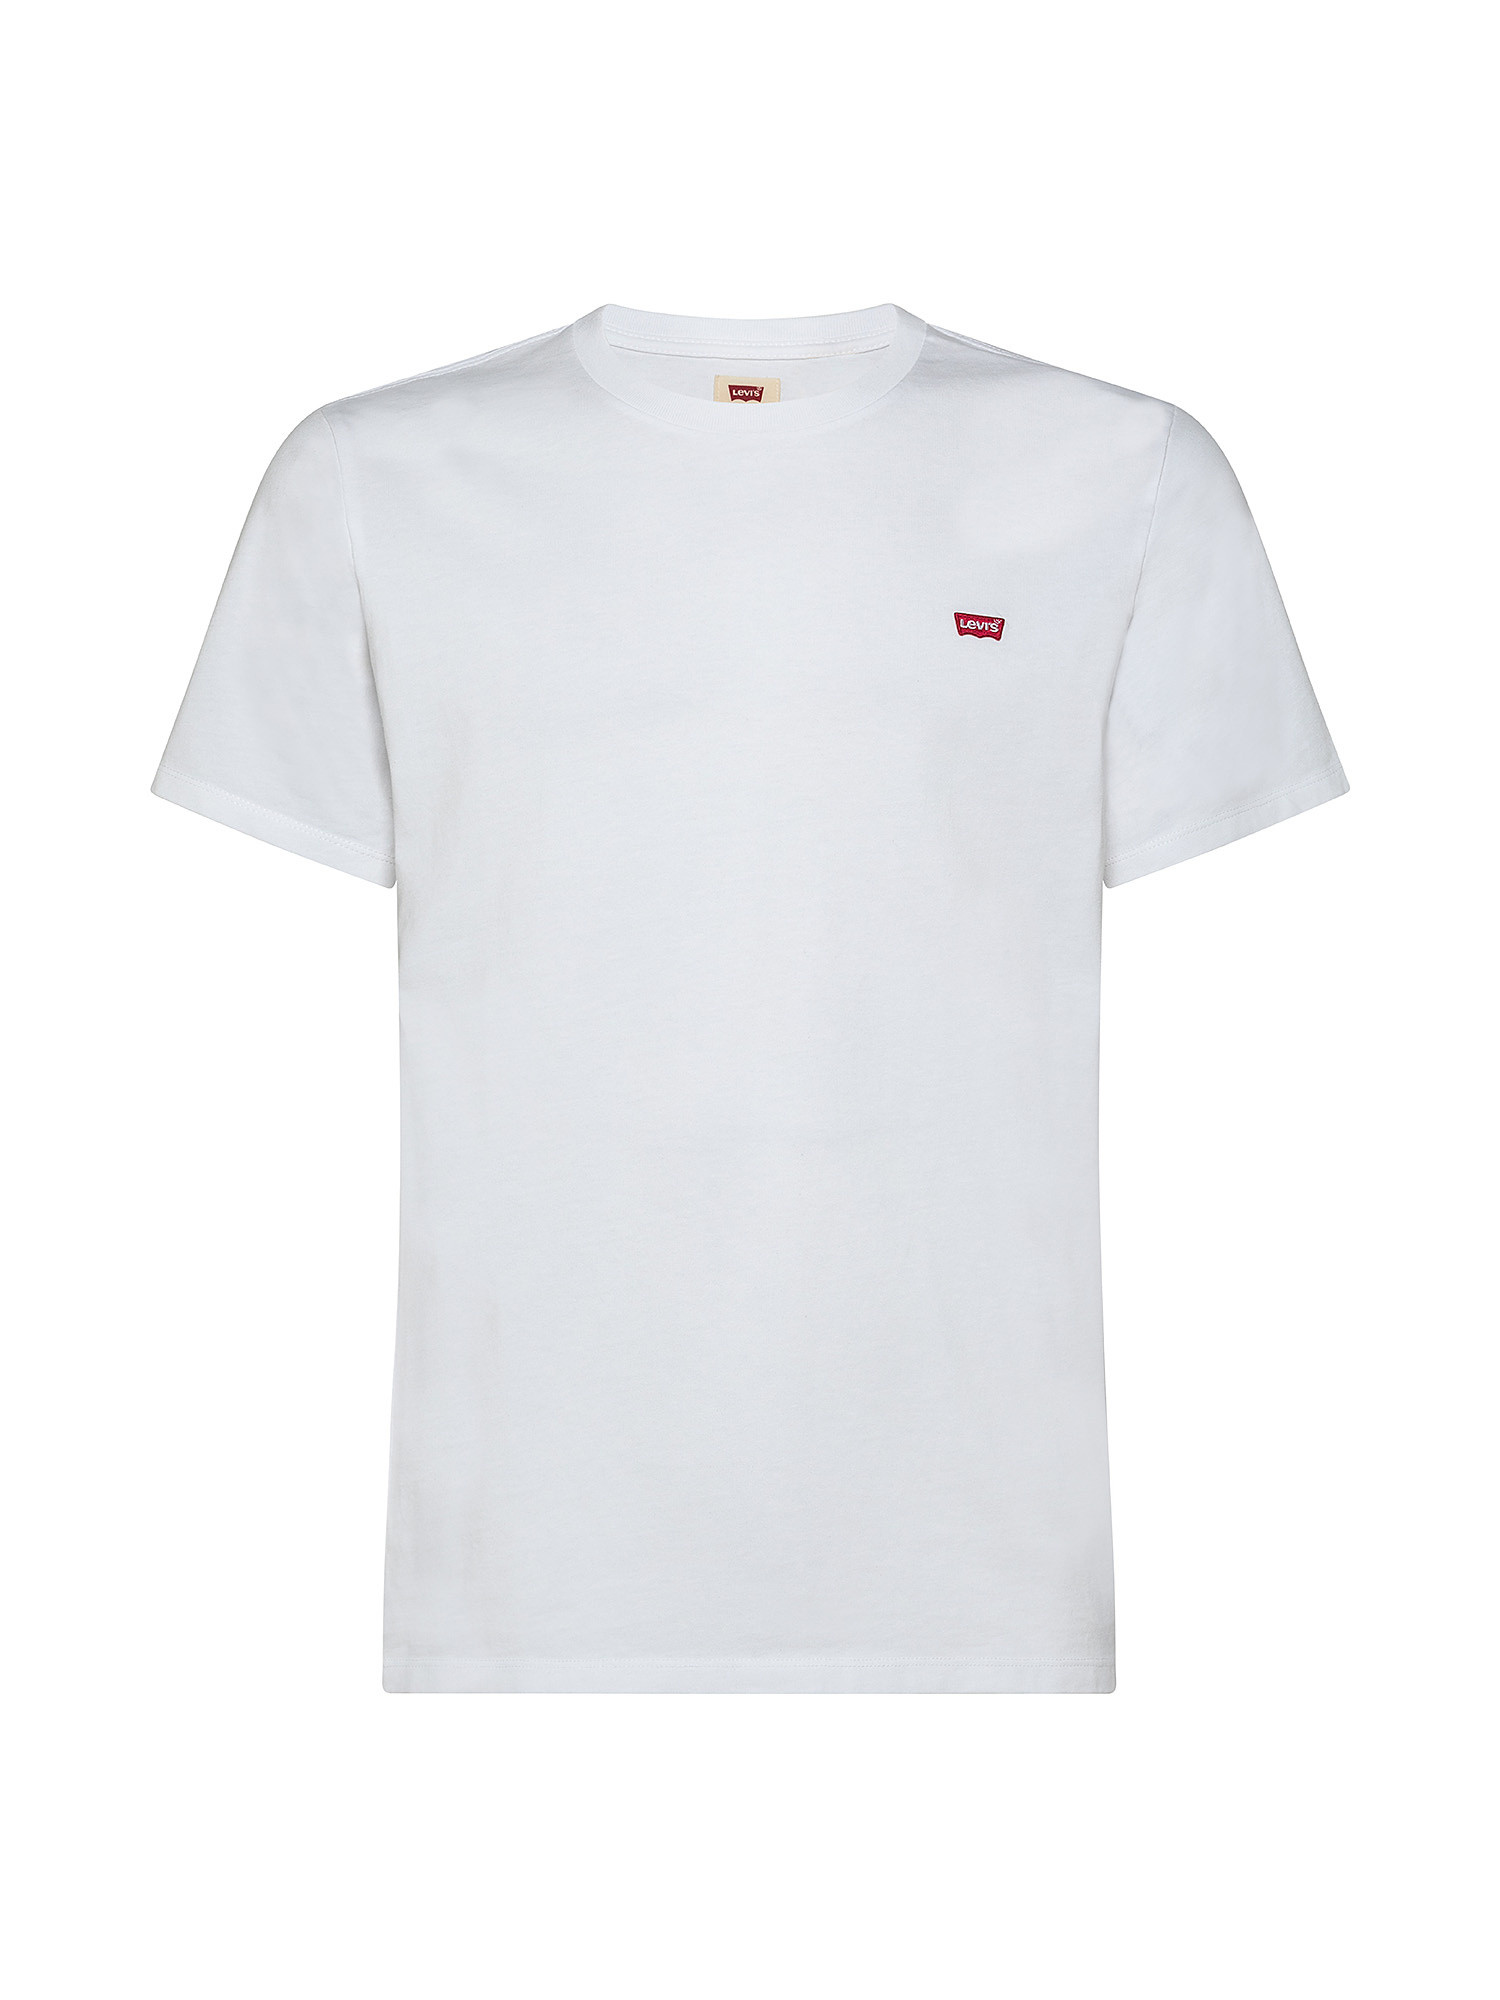 Original logo T-shirt, White, large image number 0